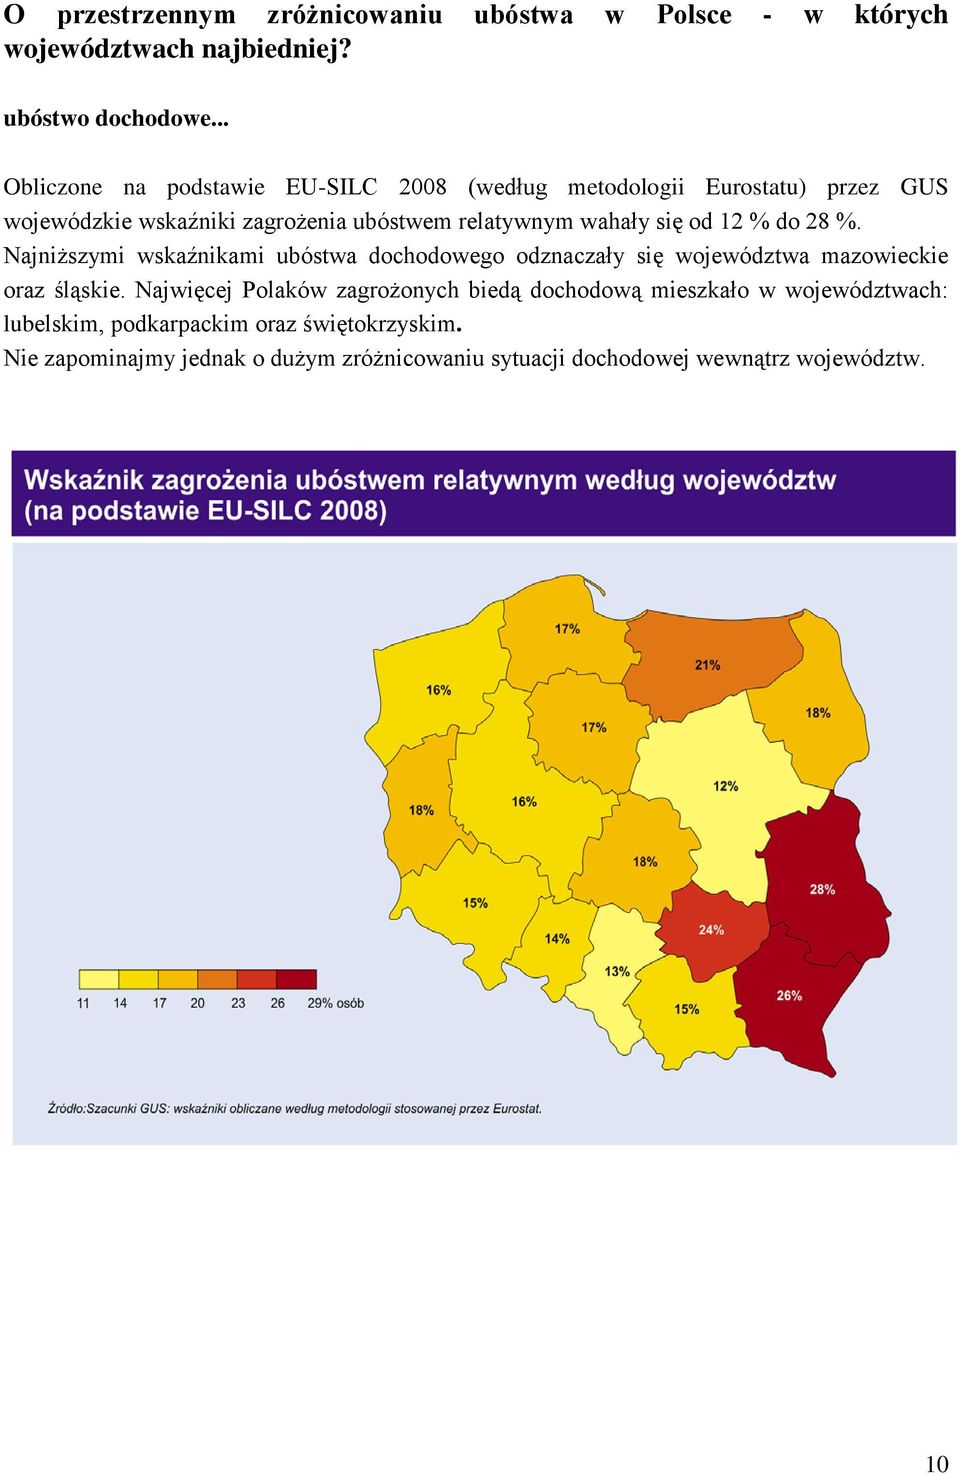 się od 12 % do 28 %. Najniższymi wskaźnikami ubóstwa dochodowego odznaczały się województwa mazowieckie oraz śląskie.